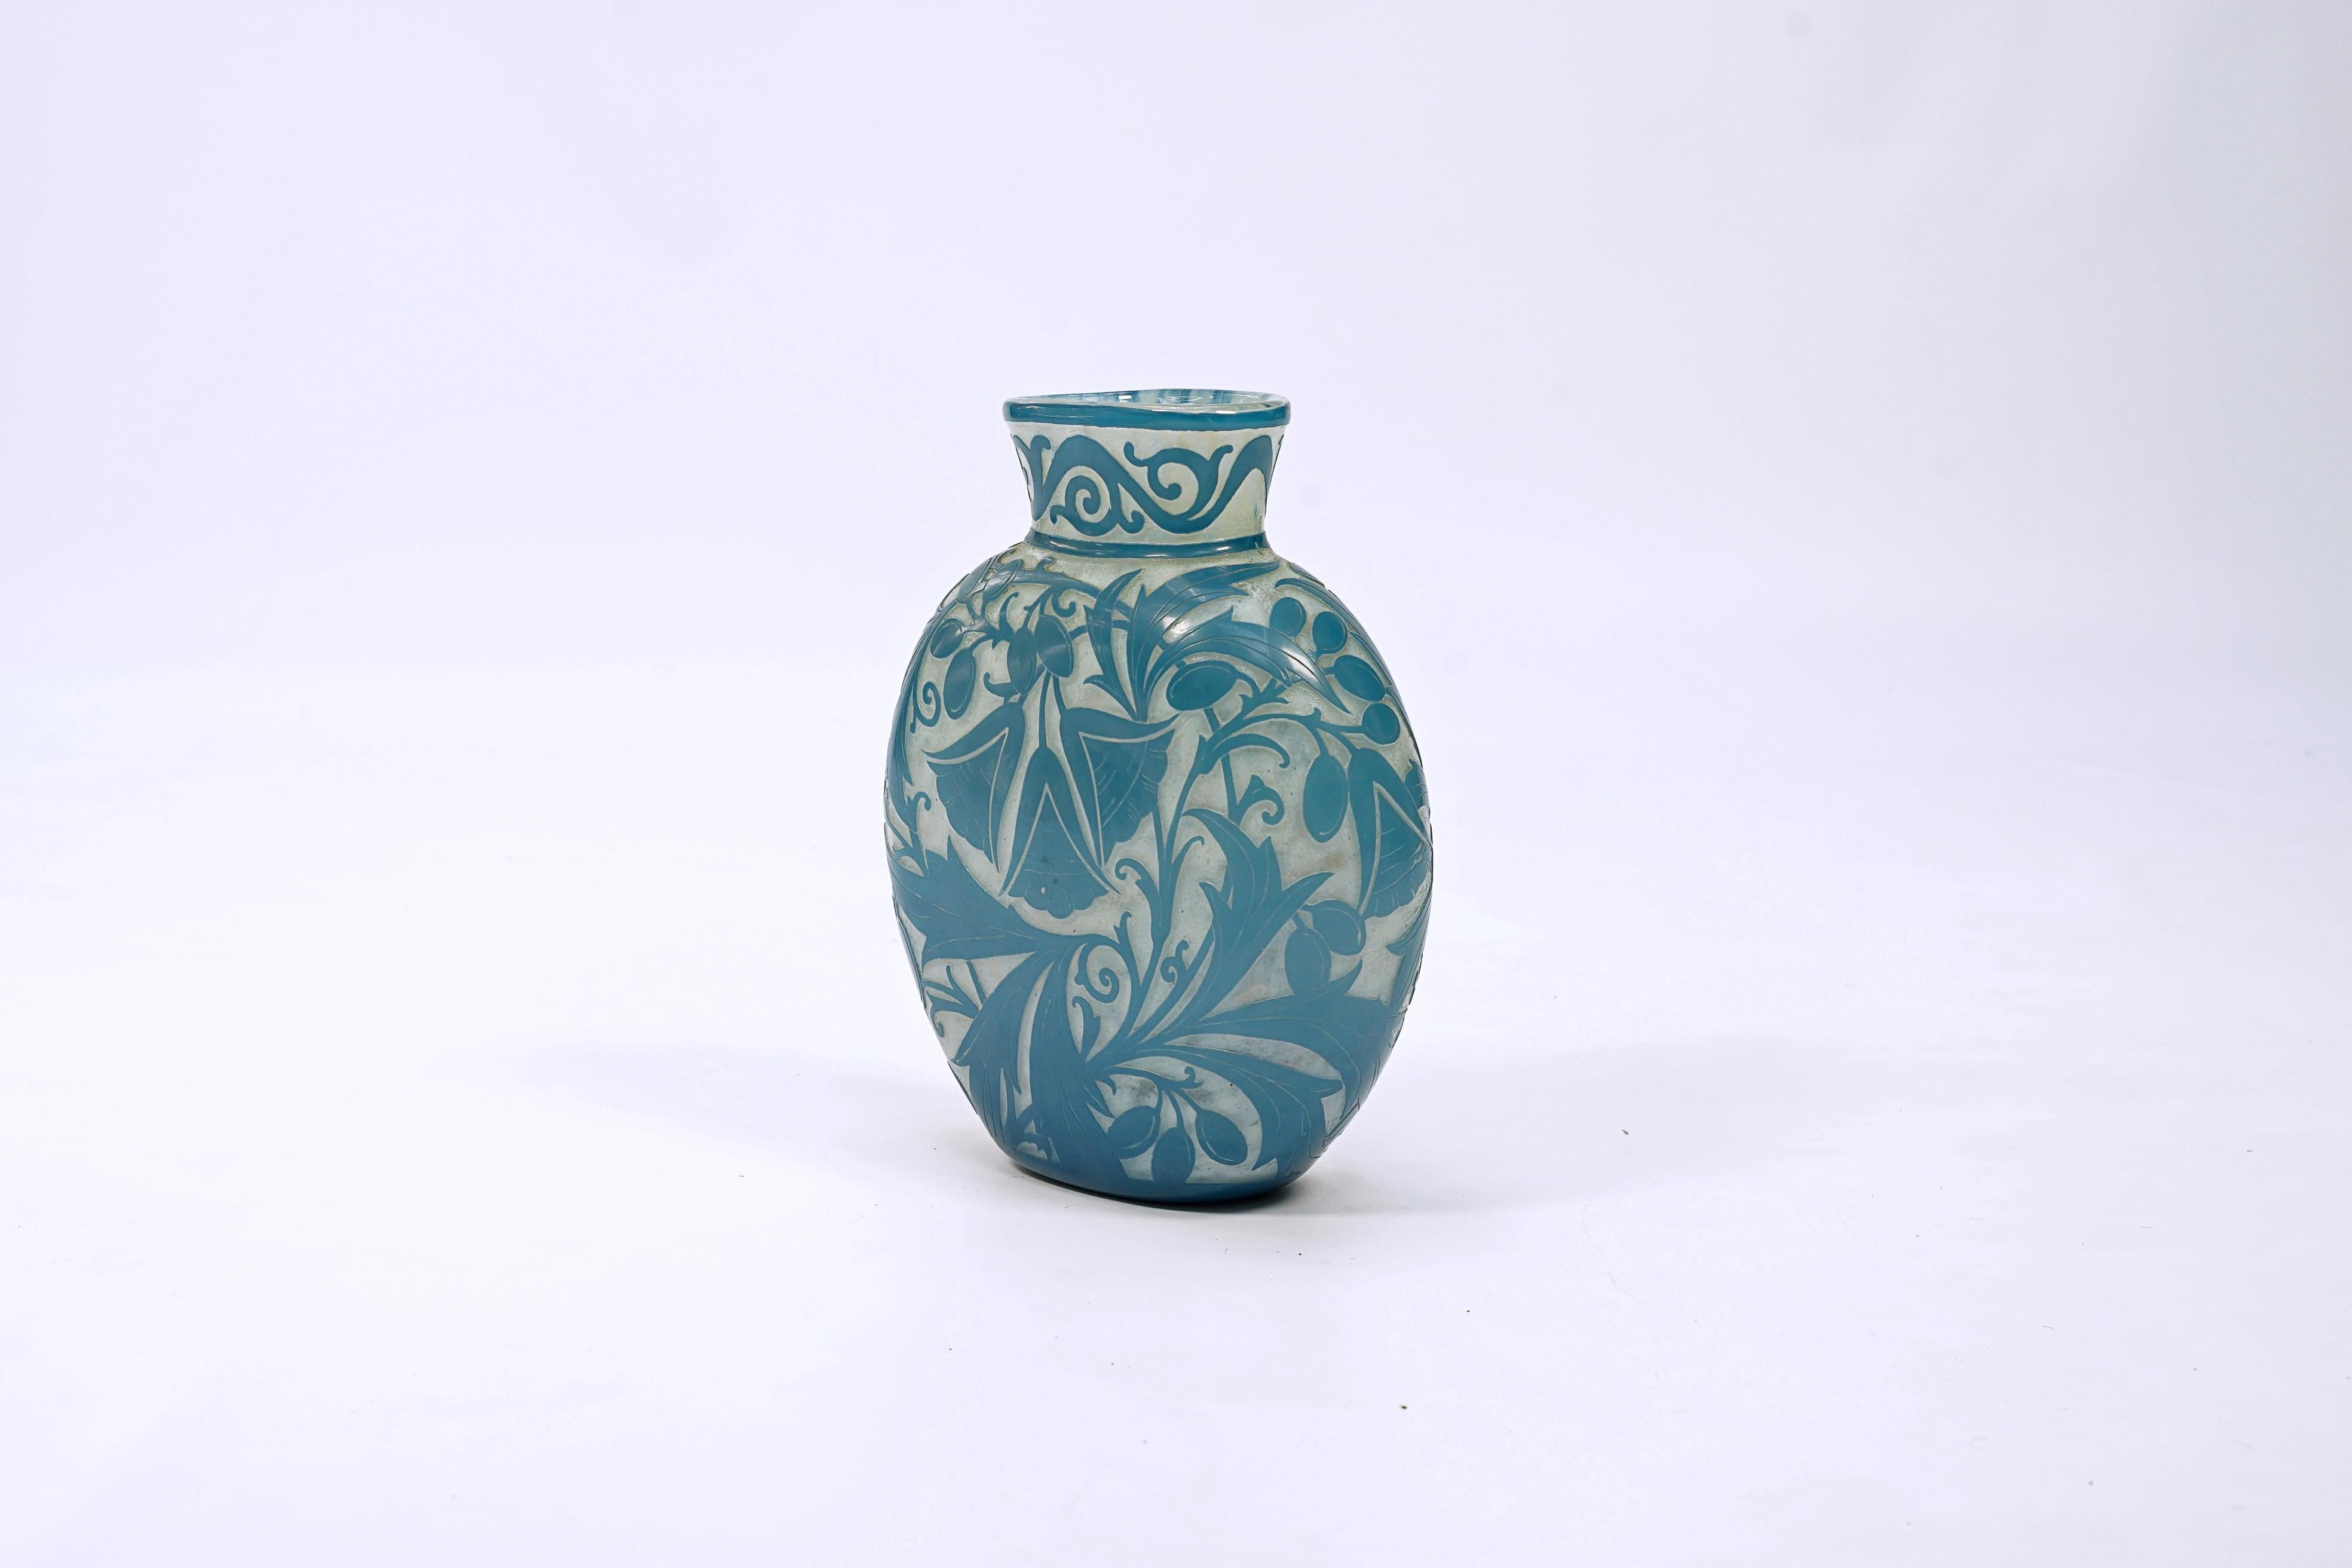 Artistic acid etched glass vase, 